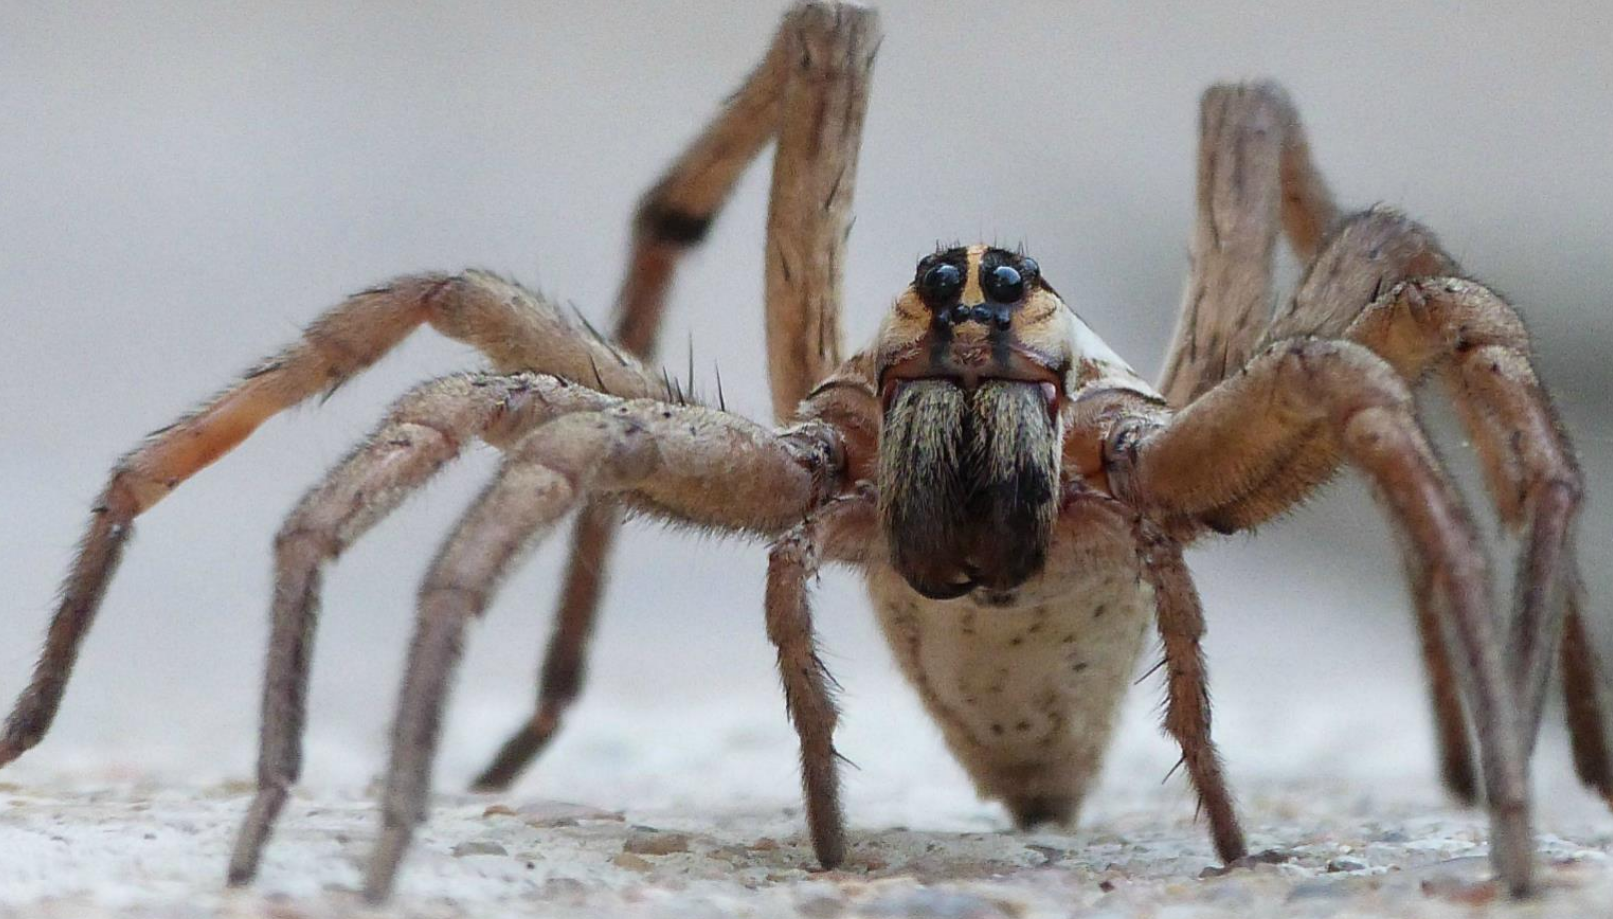 Spiders pictures. Австралийский Странствующий паук. Странствующий паук Голиаф. Тарантул паук ядовитый гигантский. Вулф Спайдер.